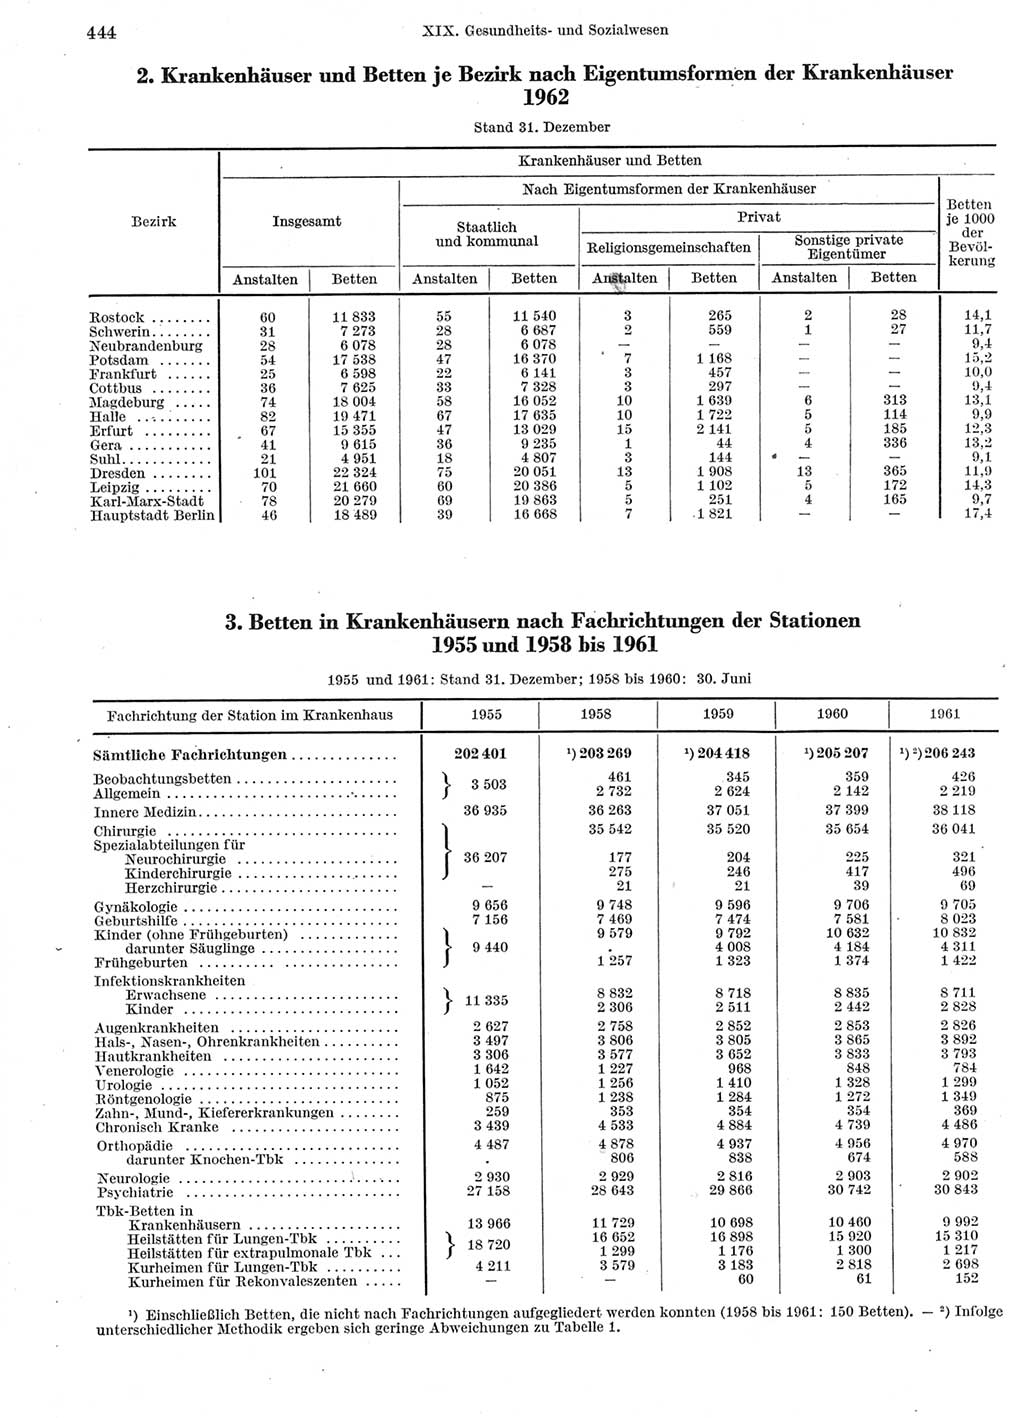 Statistisches Jahrbuch der Deutschen Demokratischen Republik (DDR) 1963, Seite 444 (Stat. Jb. DDR 1963, S. 444)